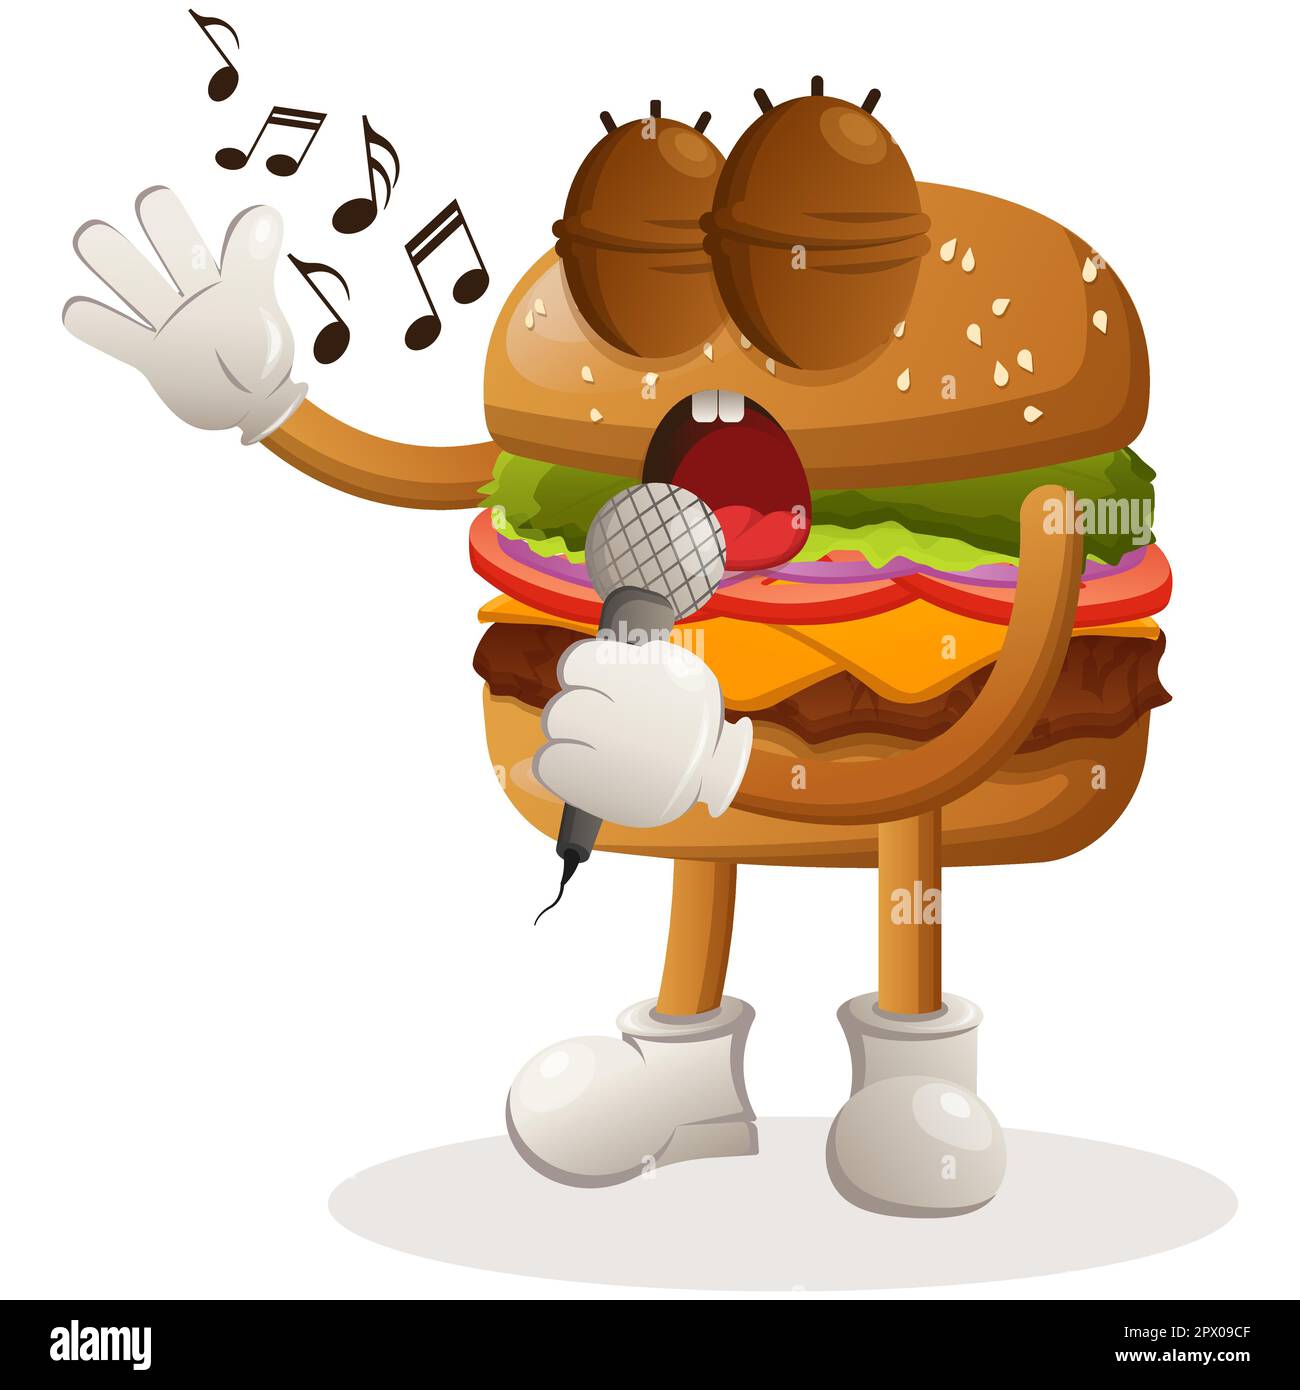 Adorable hamburger mascotte dessin chantant, chantant une chanson. Dessin de personnage de mascotte de dessin animé de Burger. Délicieux repas avec fromage, légumes et viande. Adorable mascotte v Illustration de Vecteur